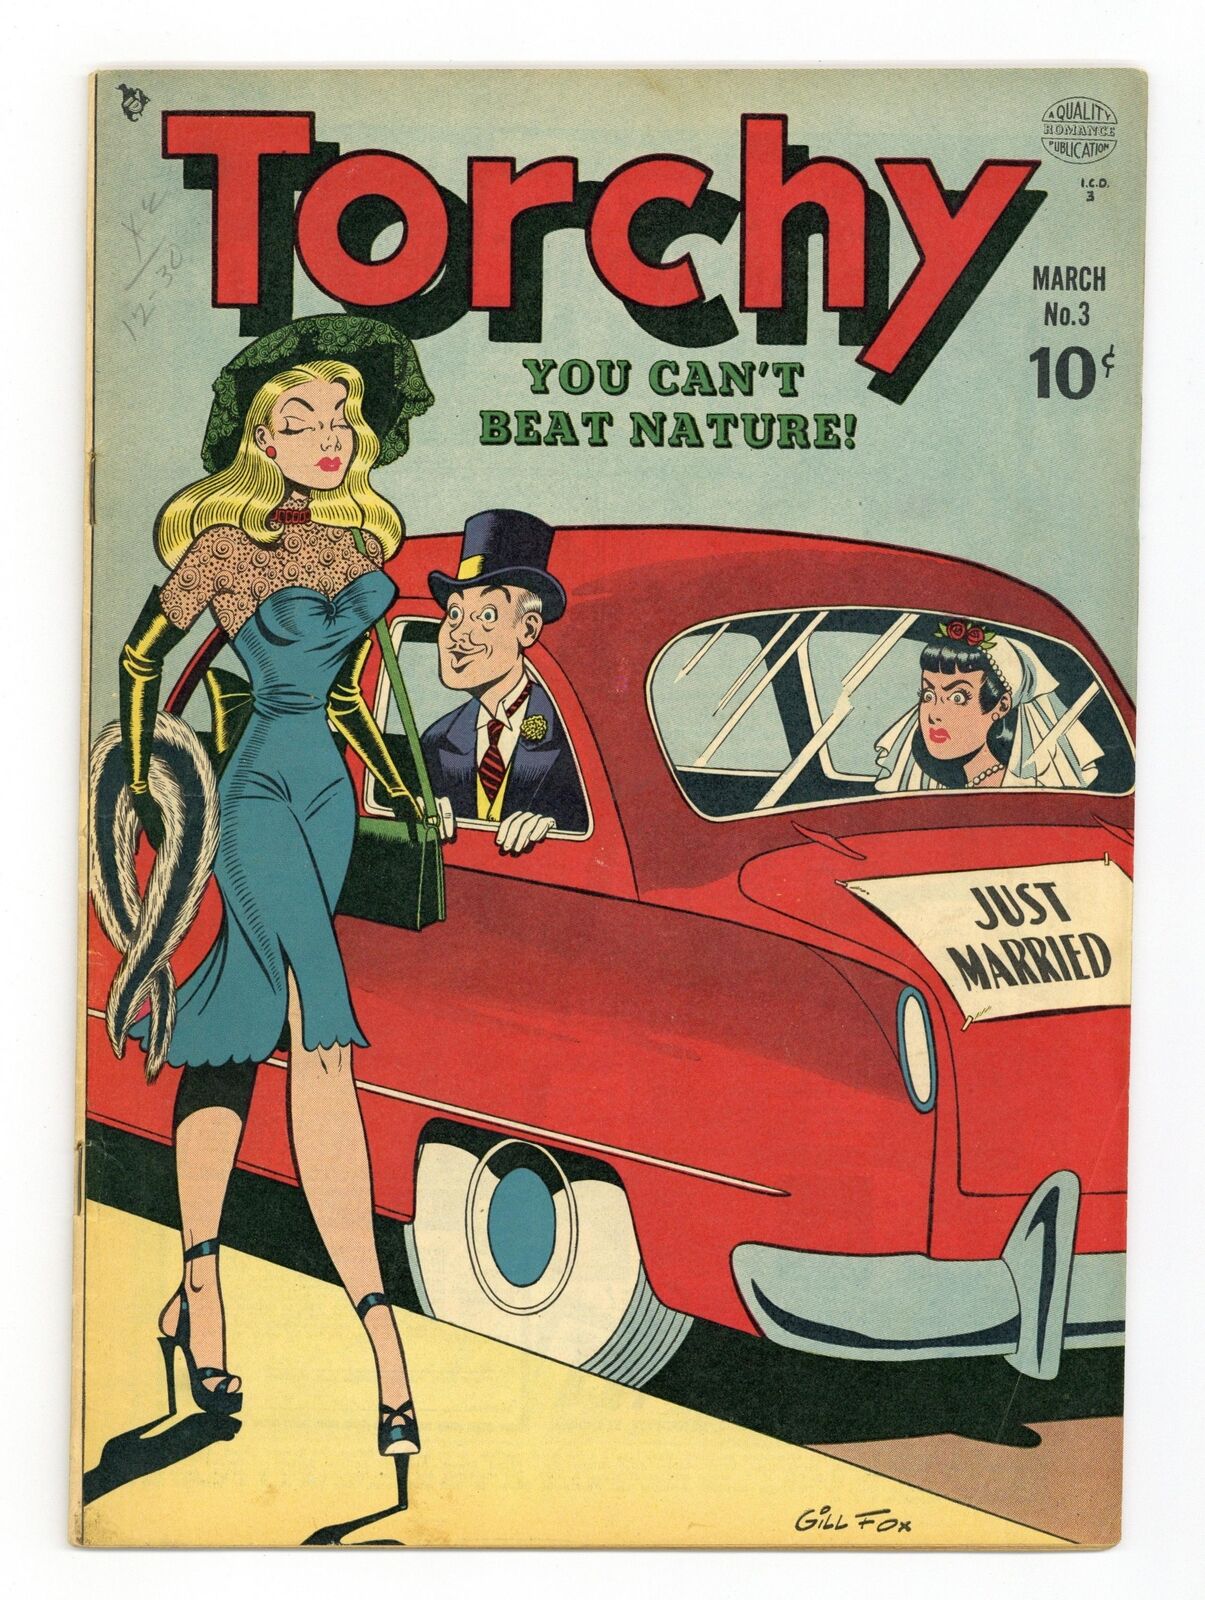 Torchy #3 VG+ 4.5 1950